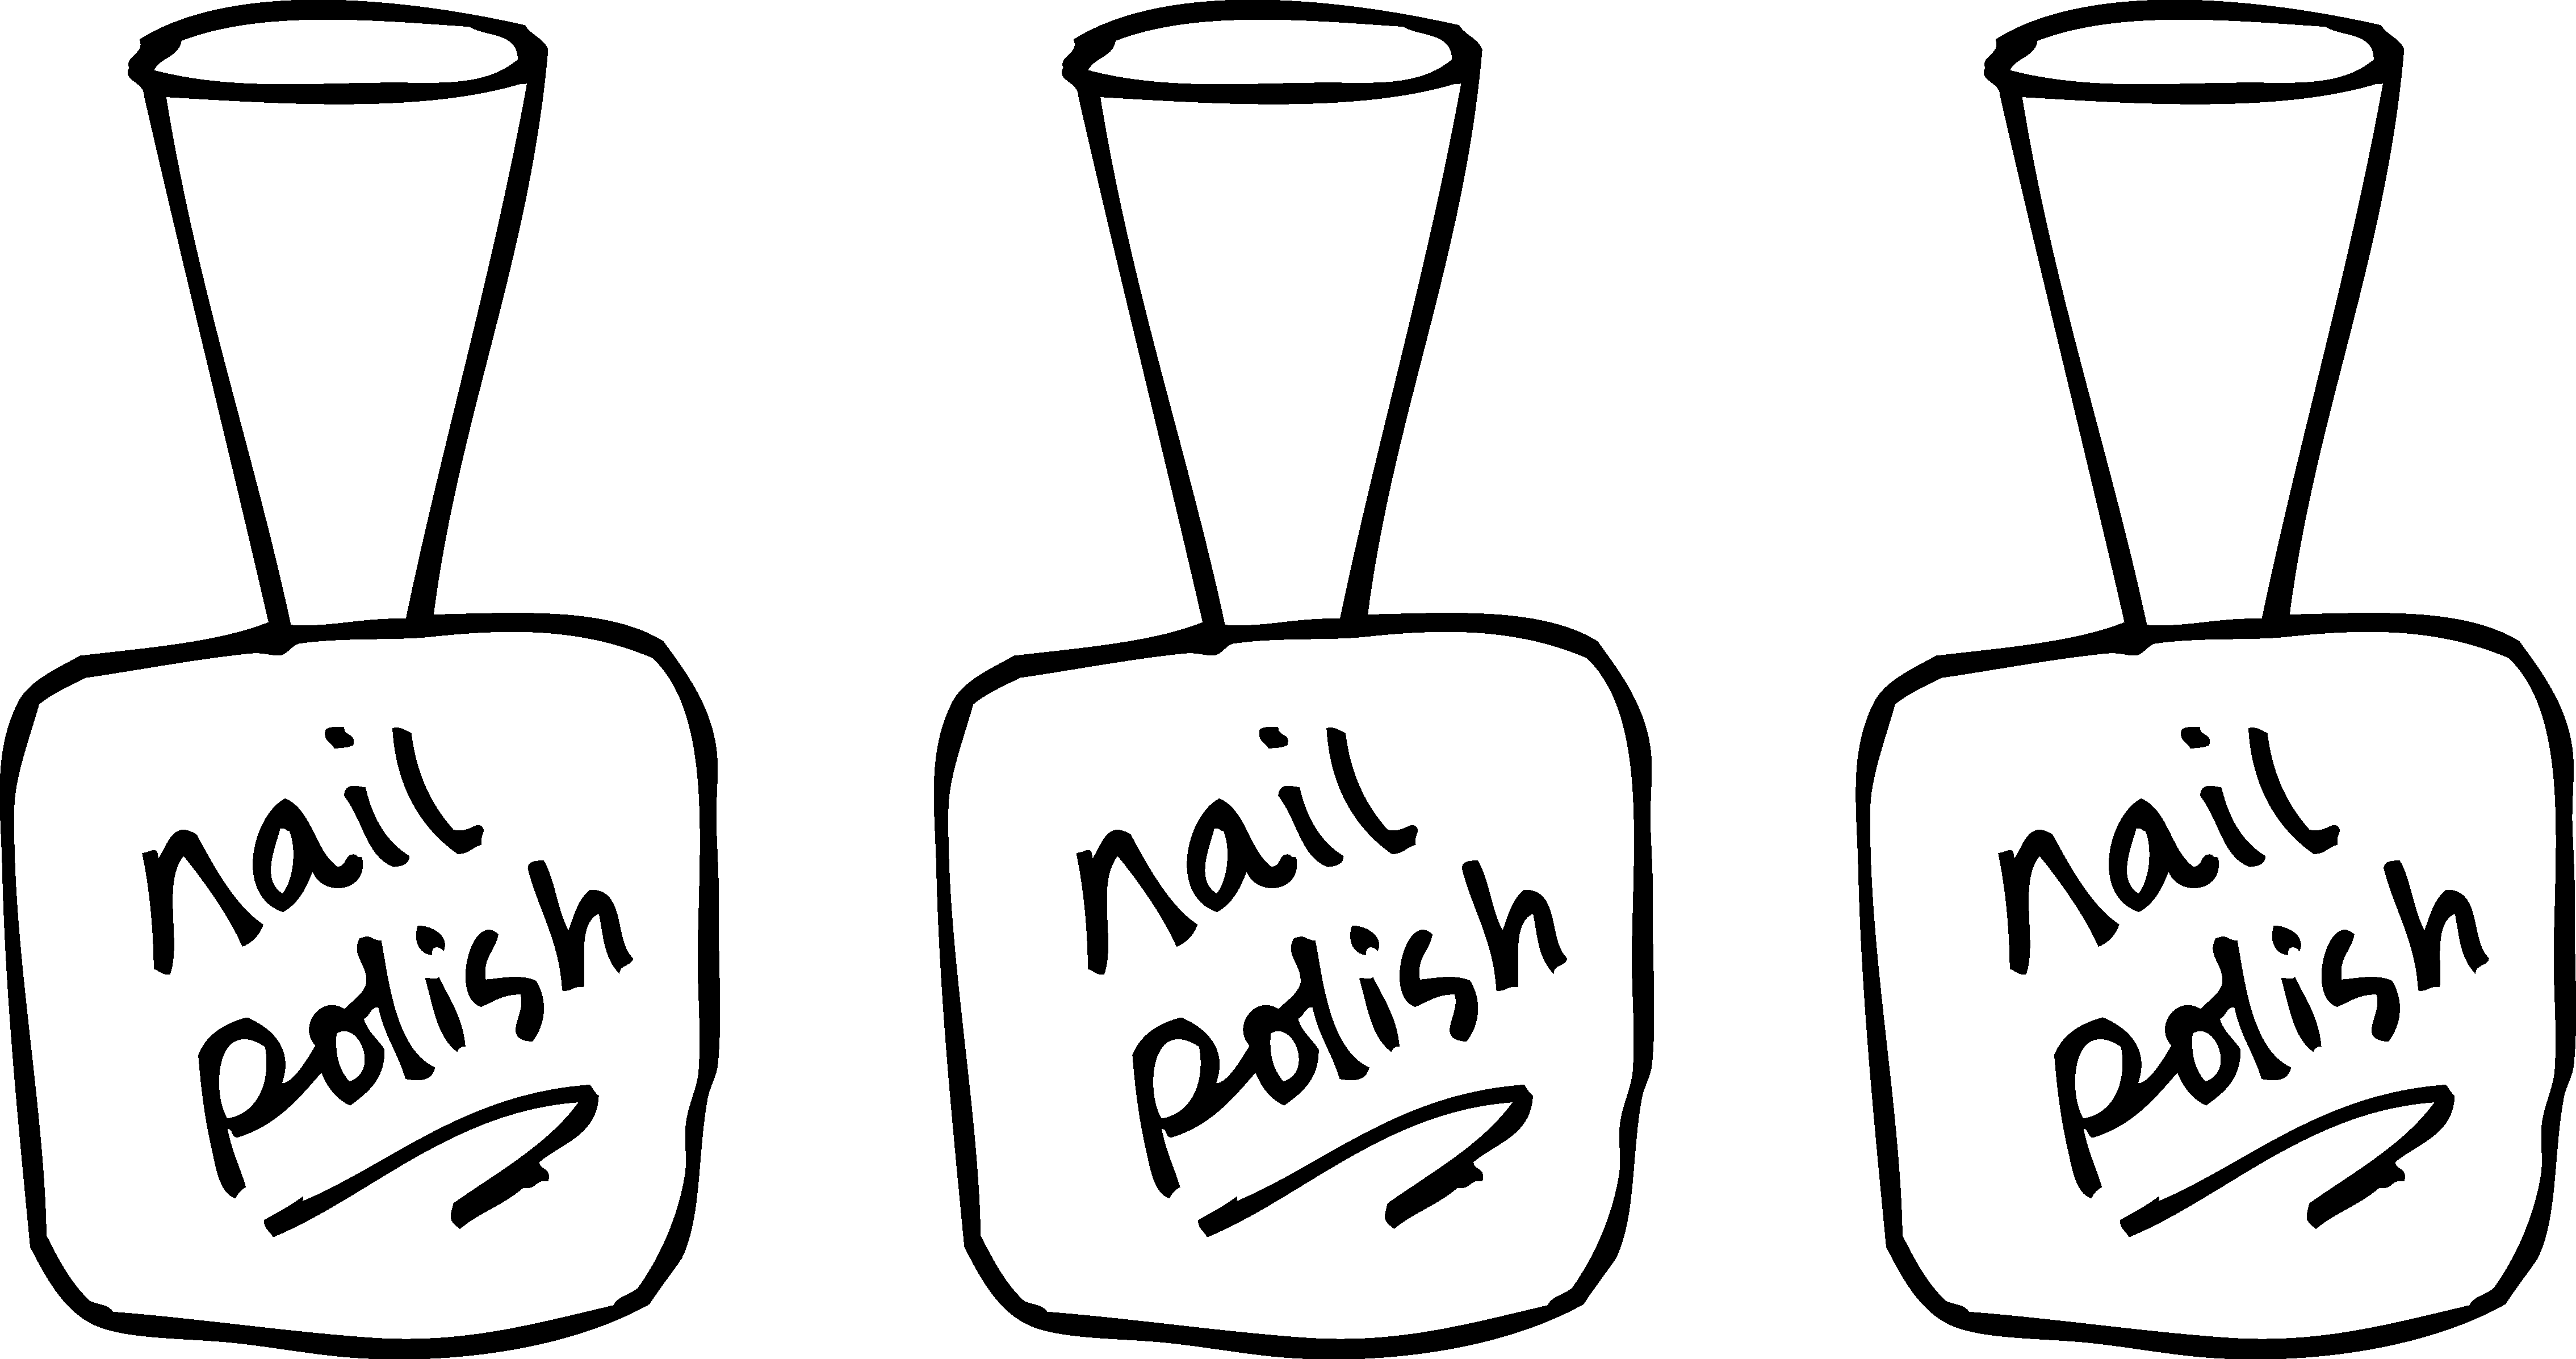 Nail clipart vector. Polish coloring page free